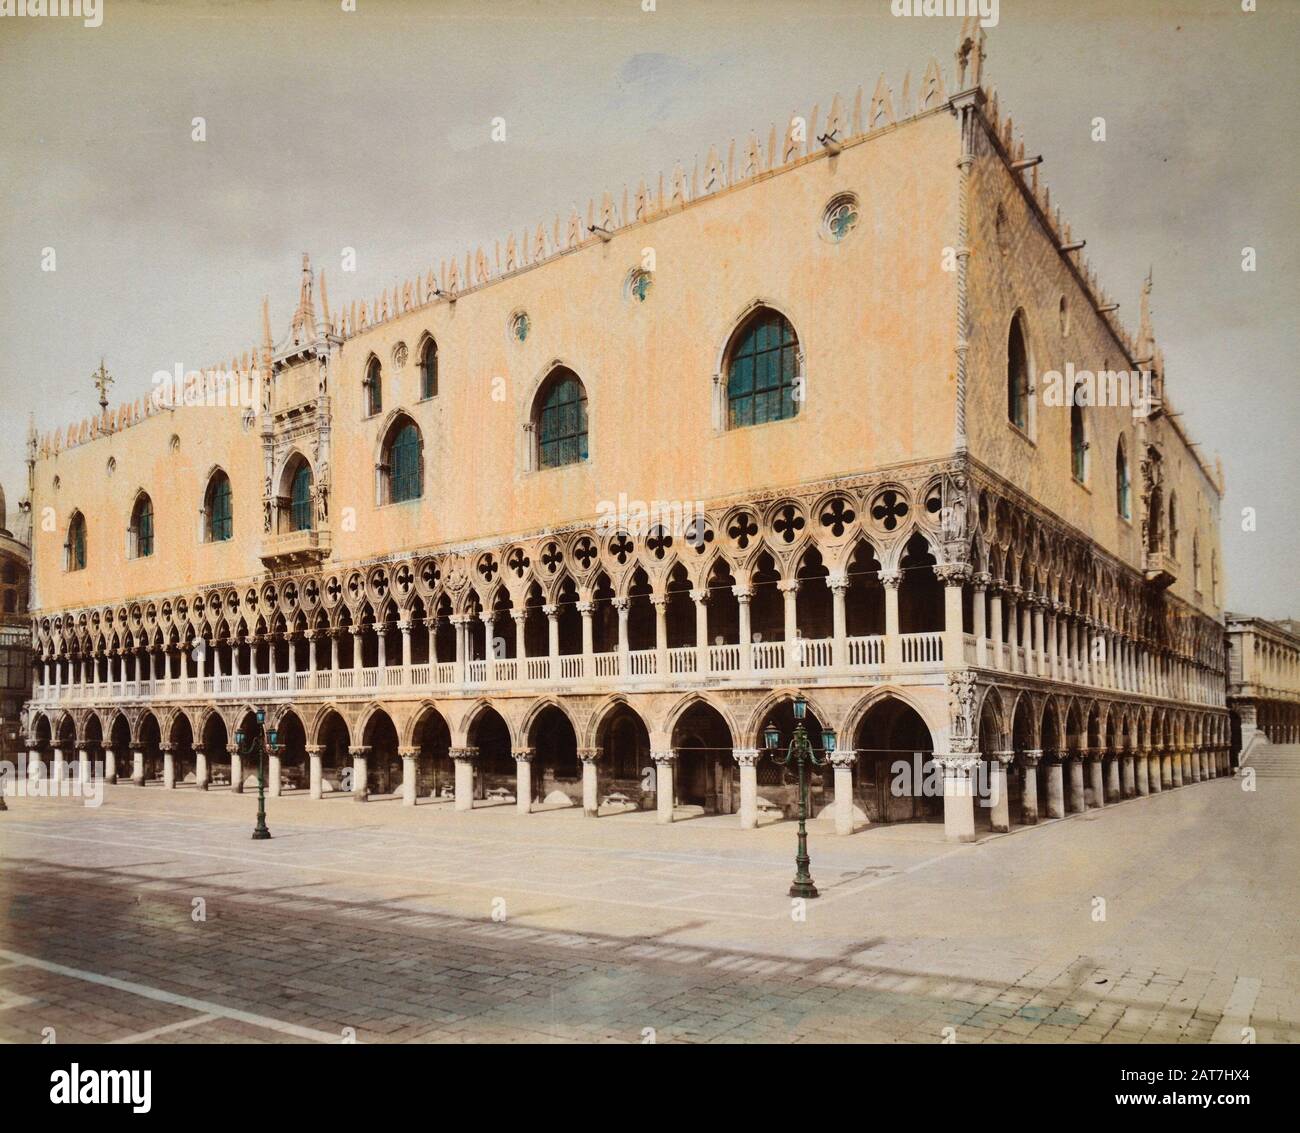 Venecia. Palacio Ducal. Stock Photo